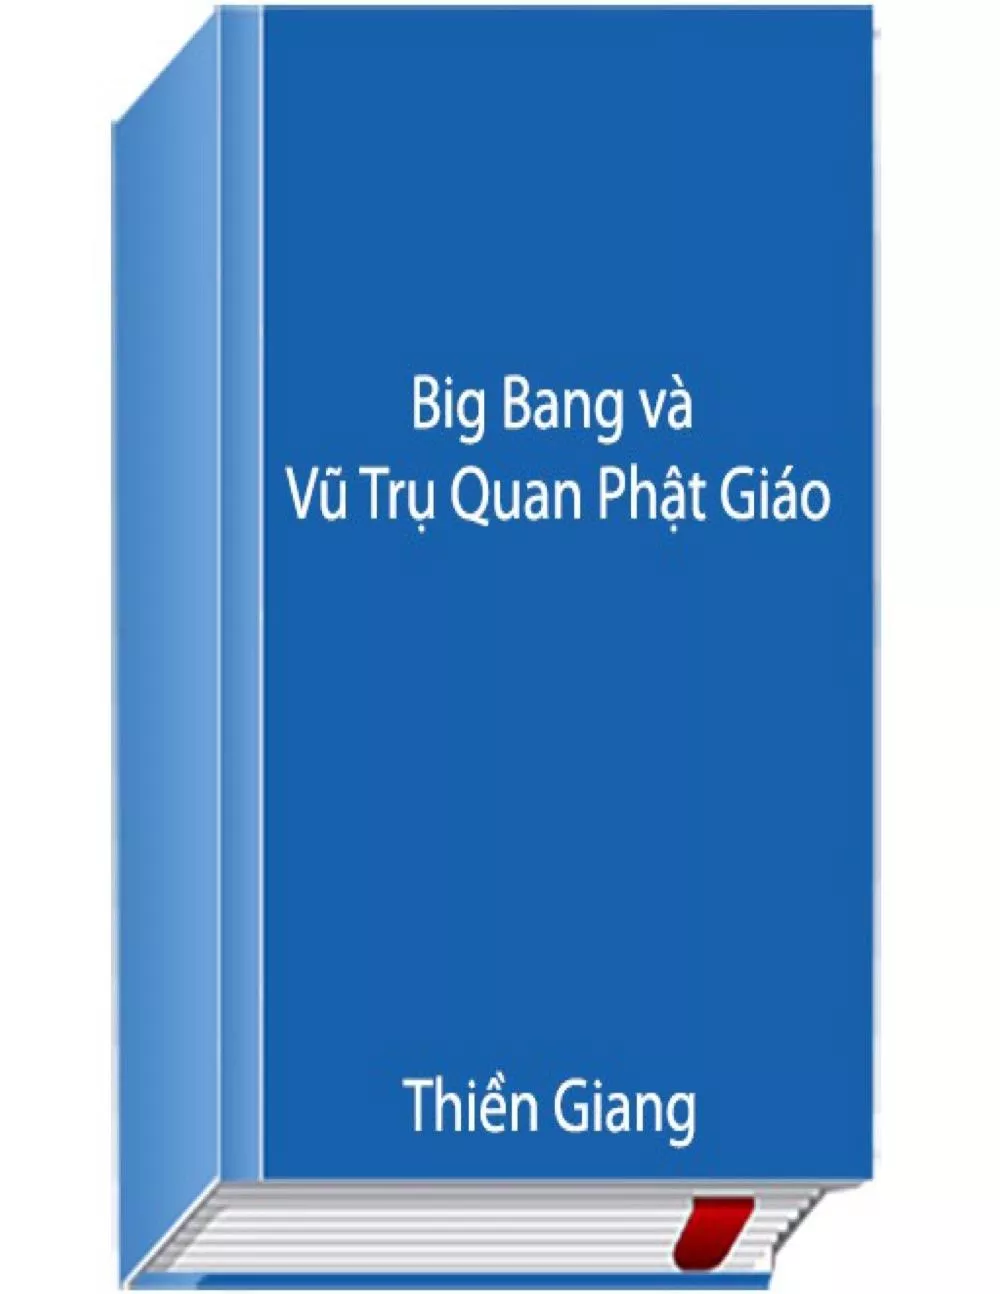 Big Bang và vũ trụ quan Phật giáo